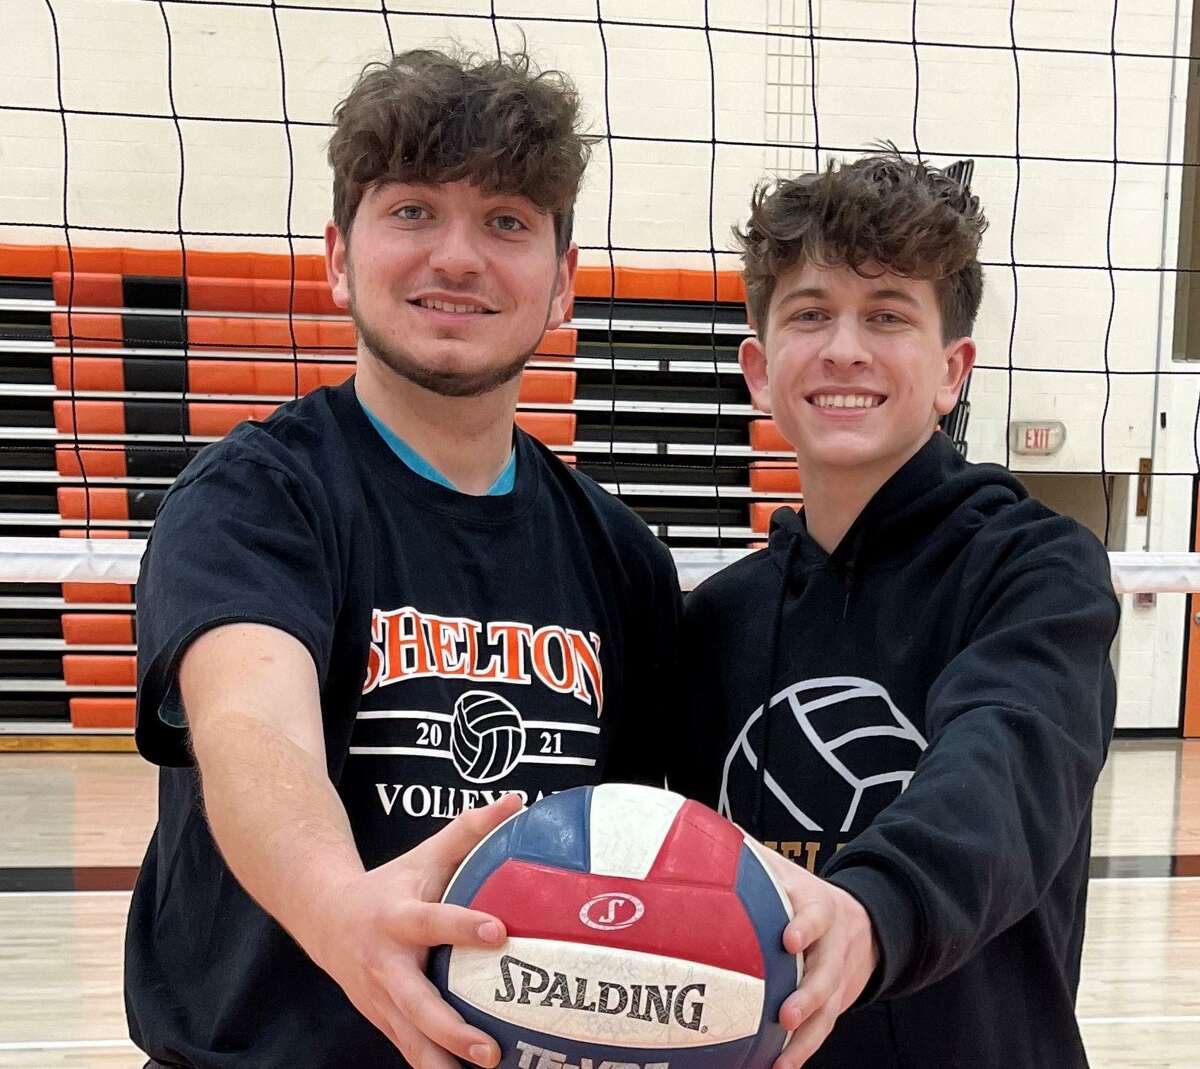 Alessandro Mallozzi and John Sabovik are Shelton boys volleyball captains.